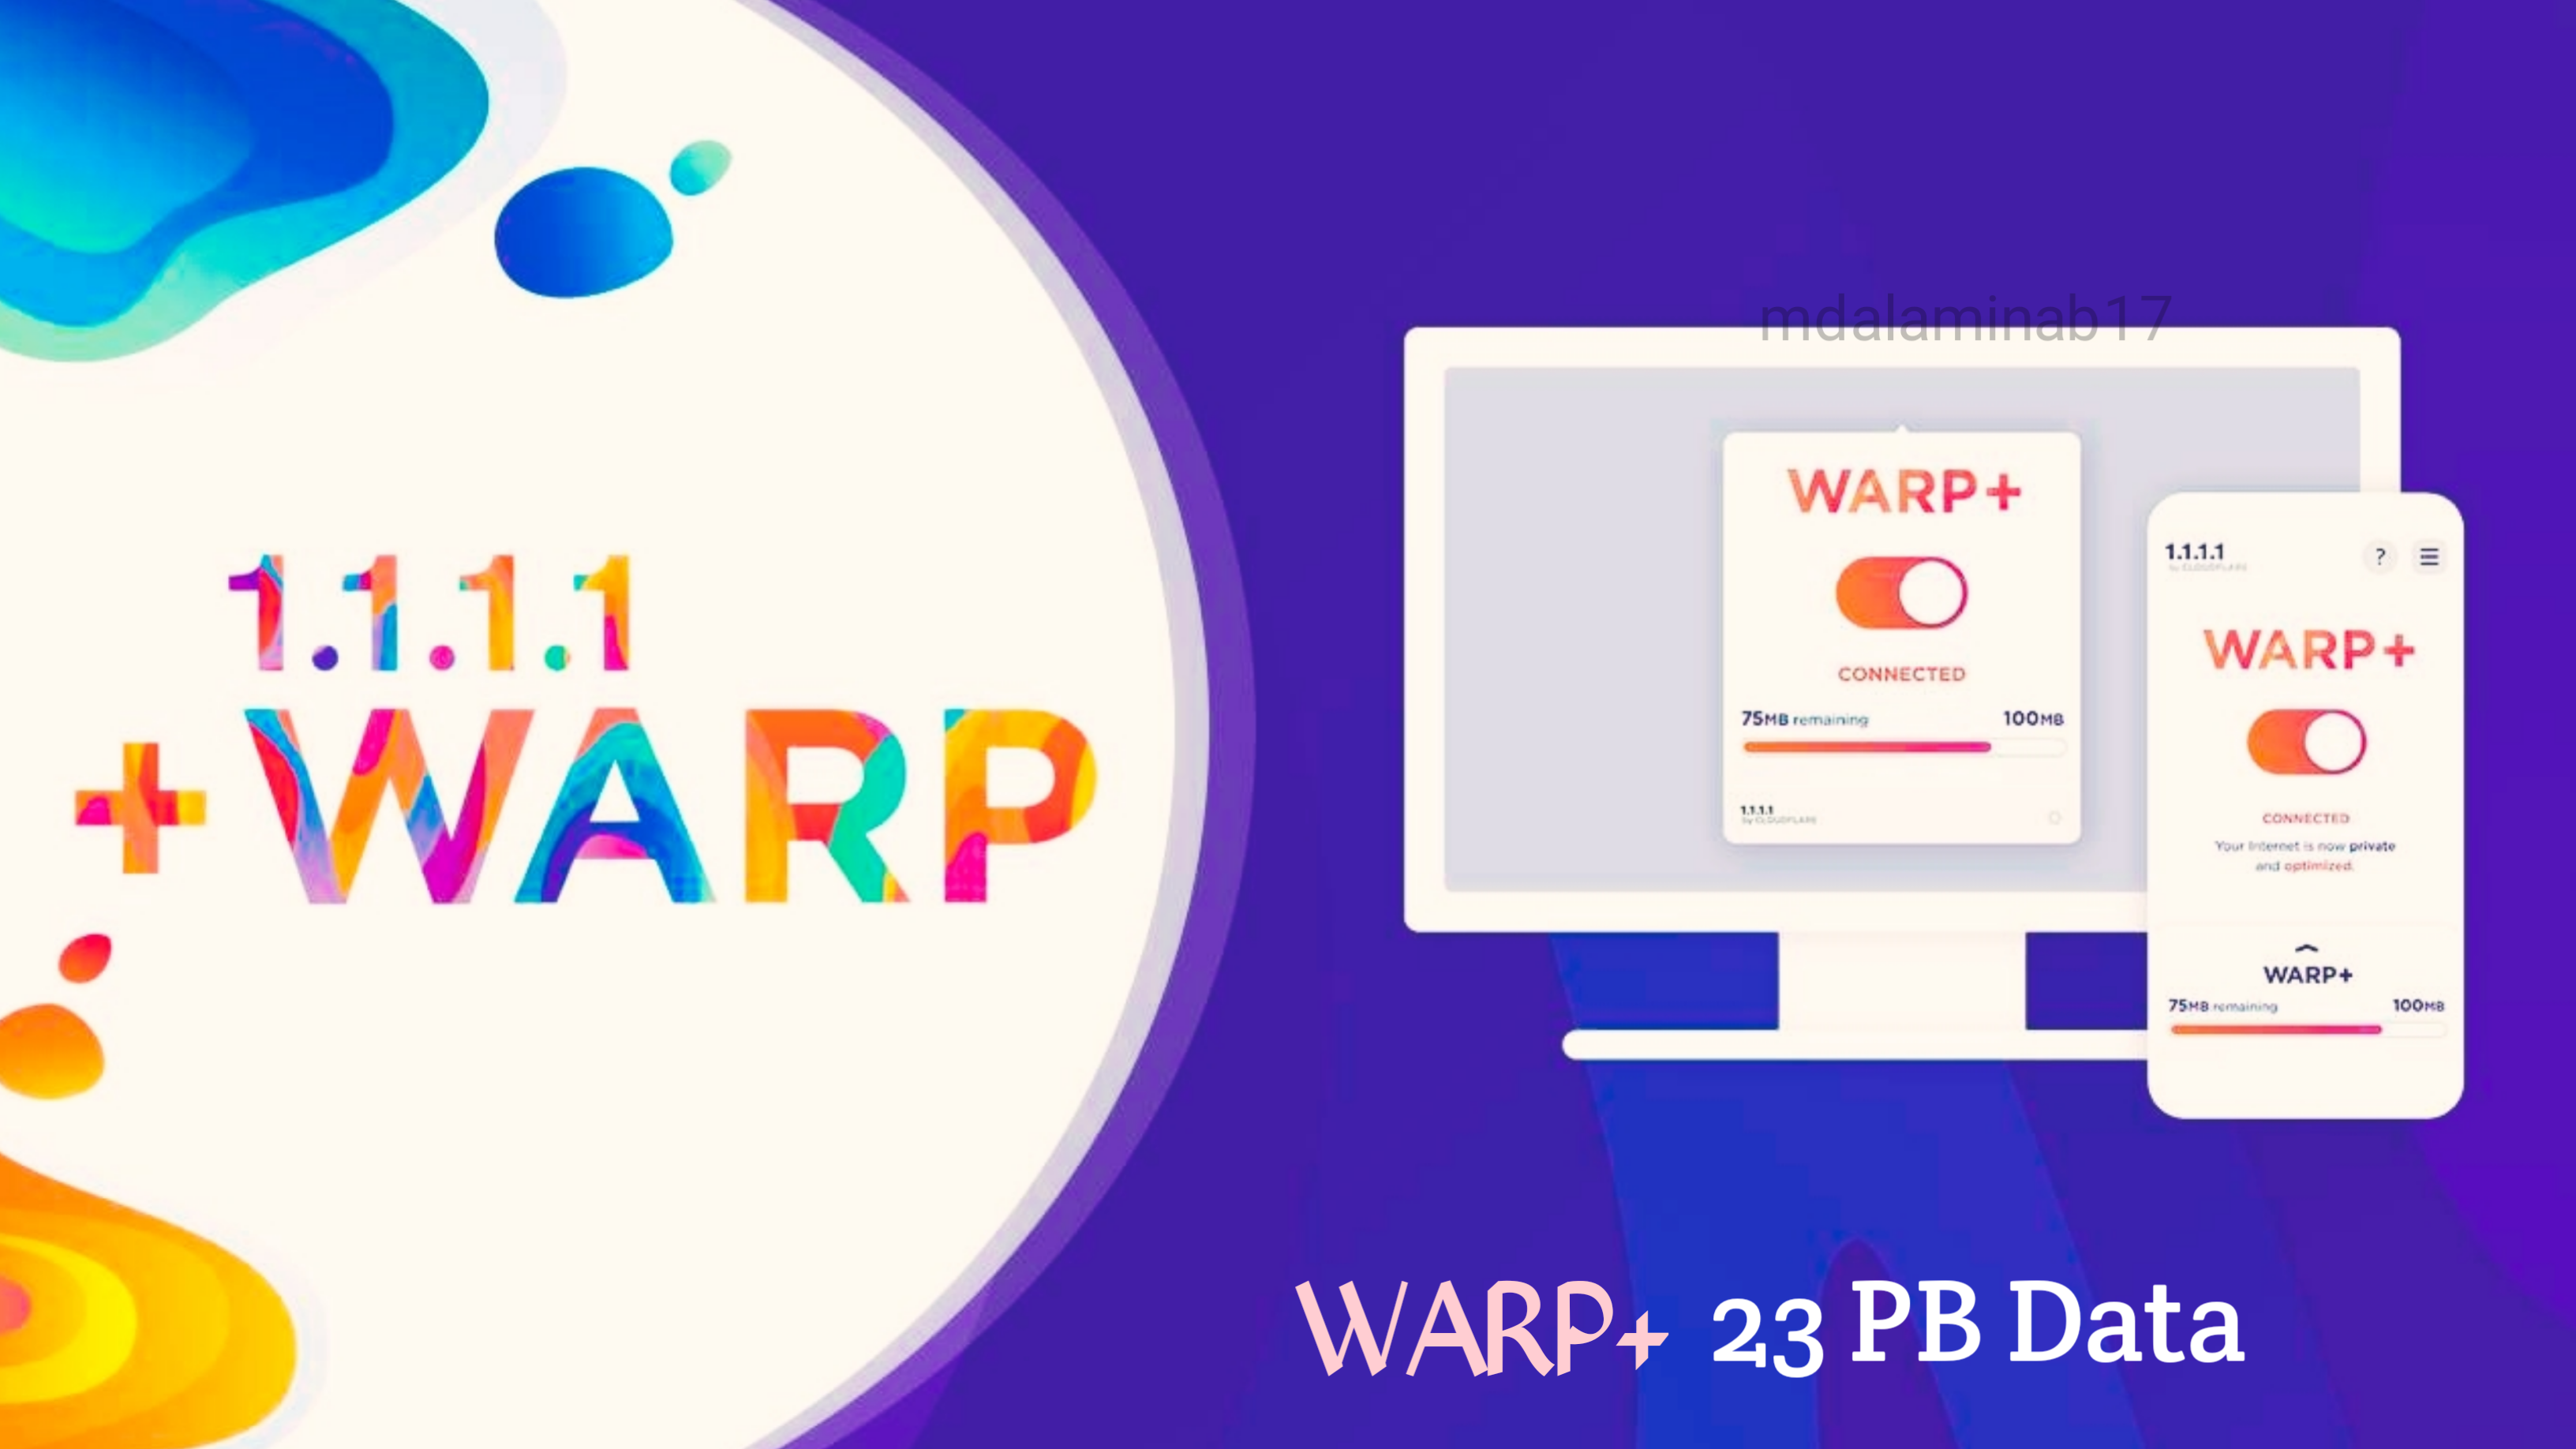 [WARP+] 1.1.1.1 Vpn এ নিয়ে নিন 23 PB Data সম্পূর্ন ফ্রিতে